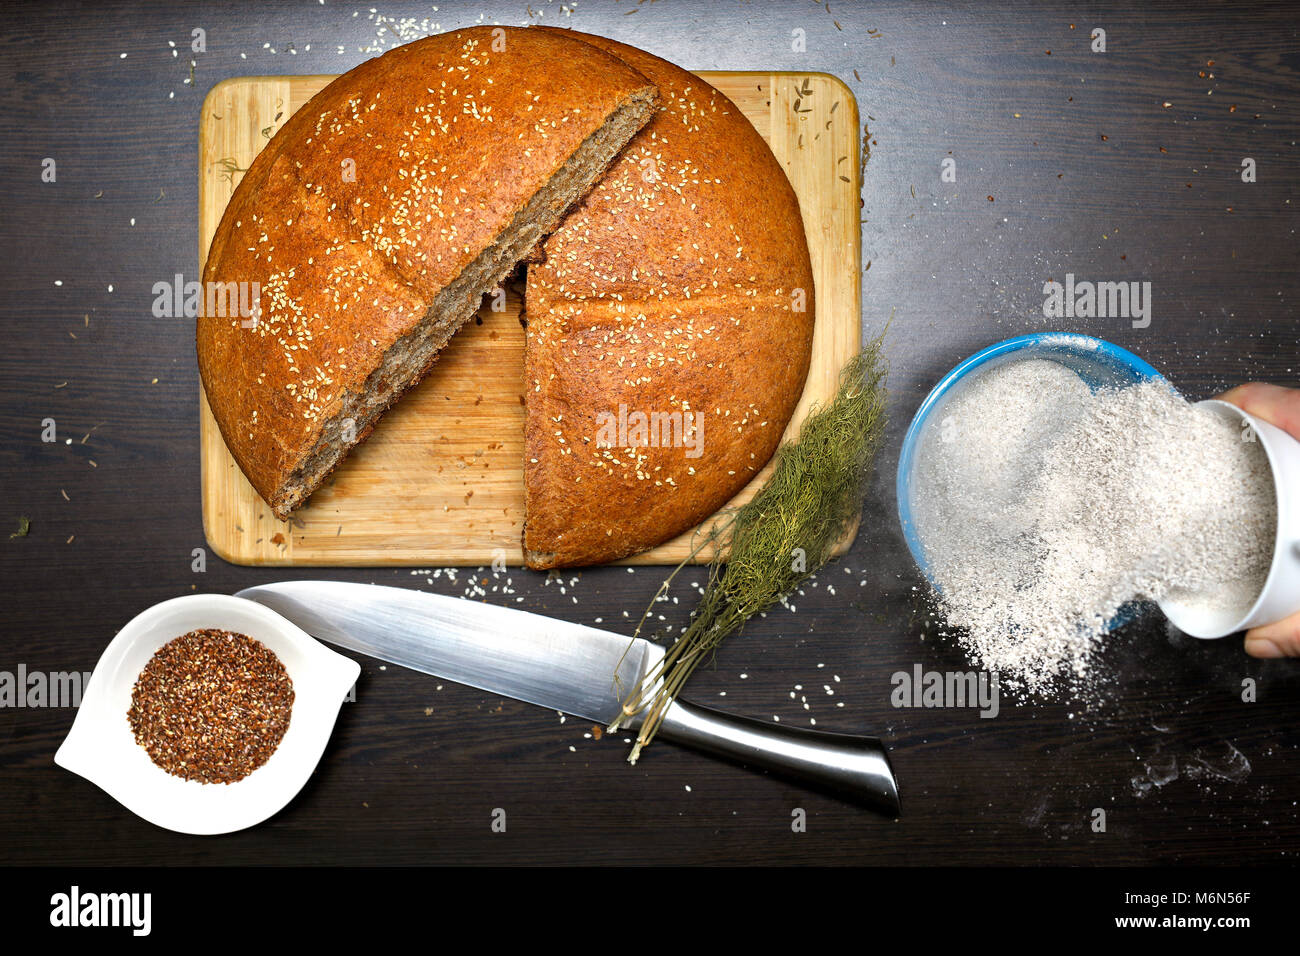 Fatto in casa pane integrale con semi di lino, farina integrale, aneto e coltello su un tavolo di legno. Donna diffondendo la farina in una ciotola. Foto Stock